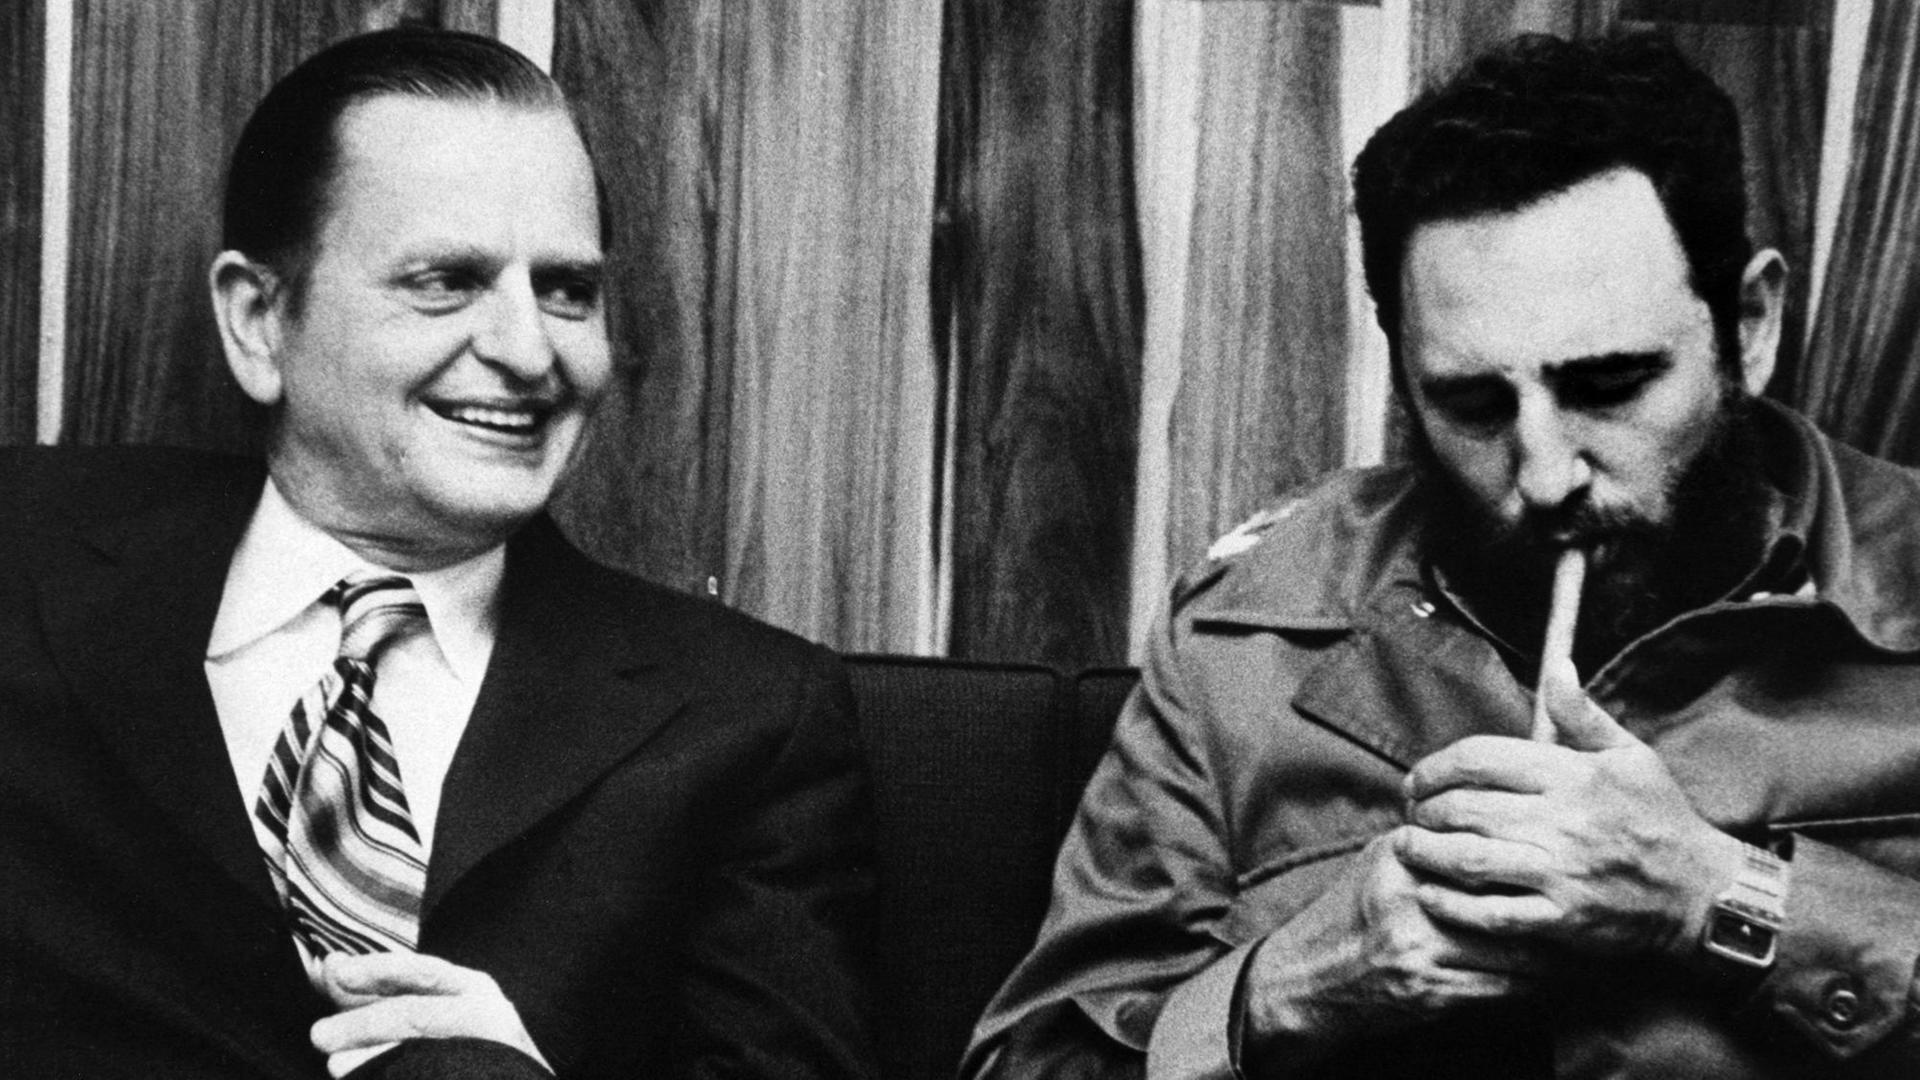 Der schwedische Ministerpräsident Olof Palme (links) sitzt neben dem damaligen kubanischen Regierungschef Fidel Castro